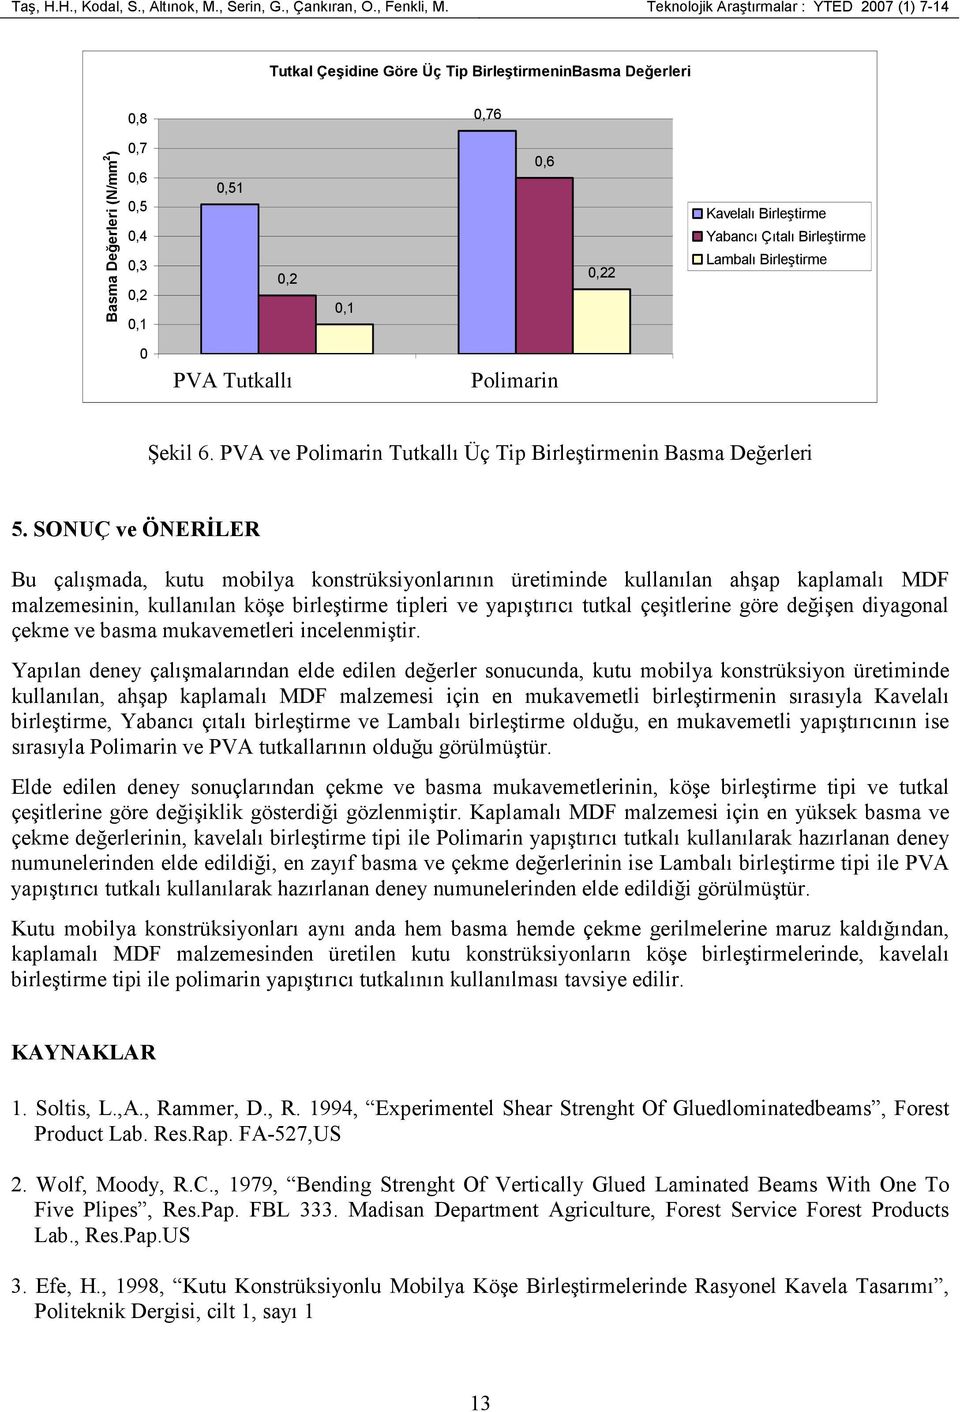 Birleştirme Yabancı Çıtalı Birleştirme Lambalı Birleştirme 0 PVA Tutkallı Polimarin 1 2 Şekil 6. PVA ve Polimarin Tutkallı Üç Tip Birleştirmenin Basma Değerleri 5.